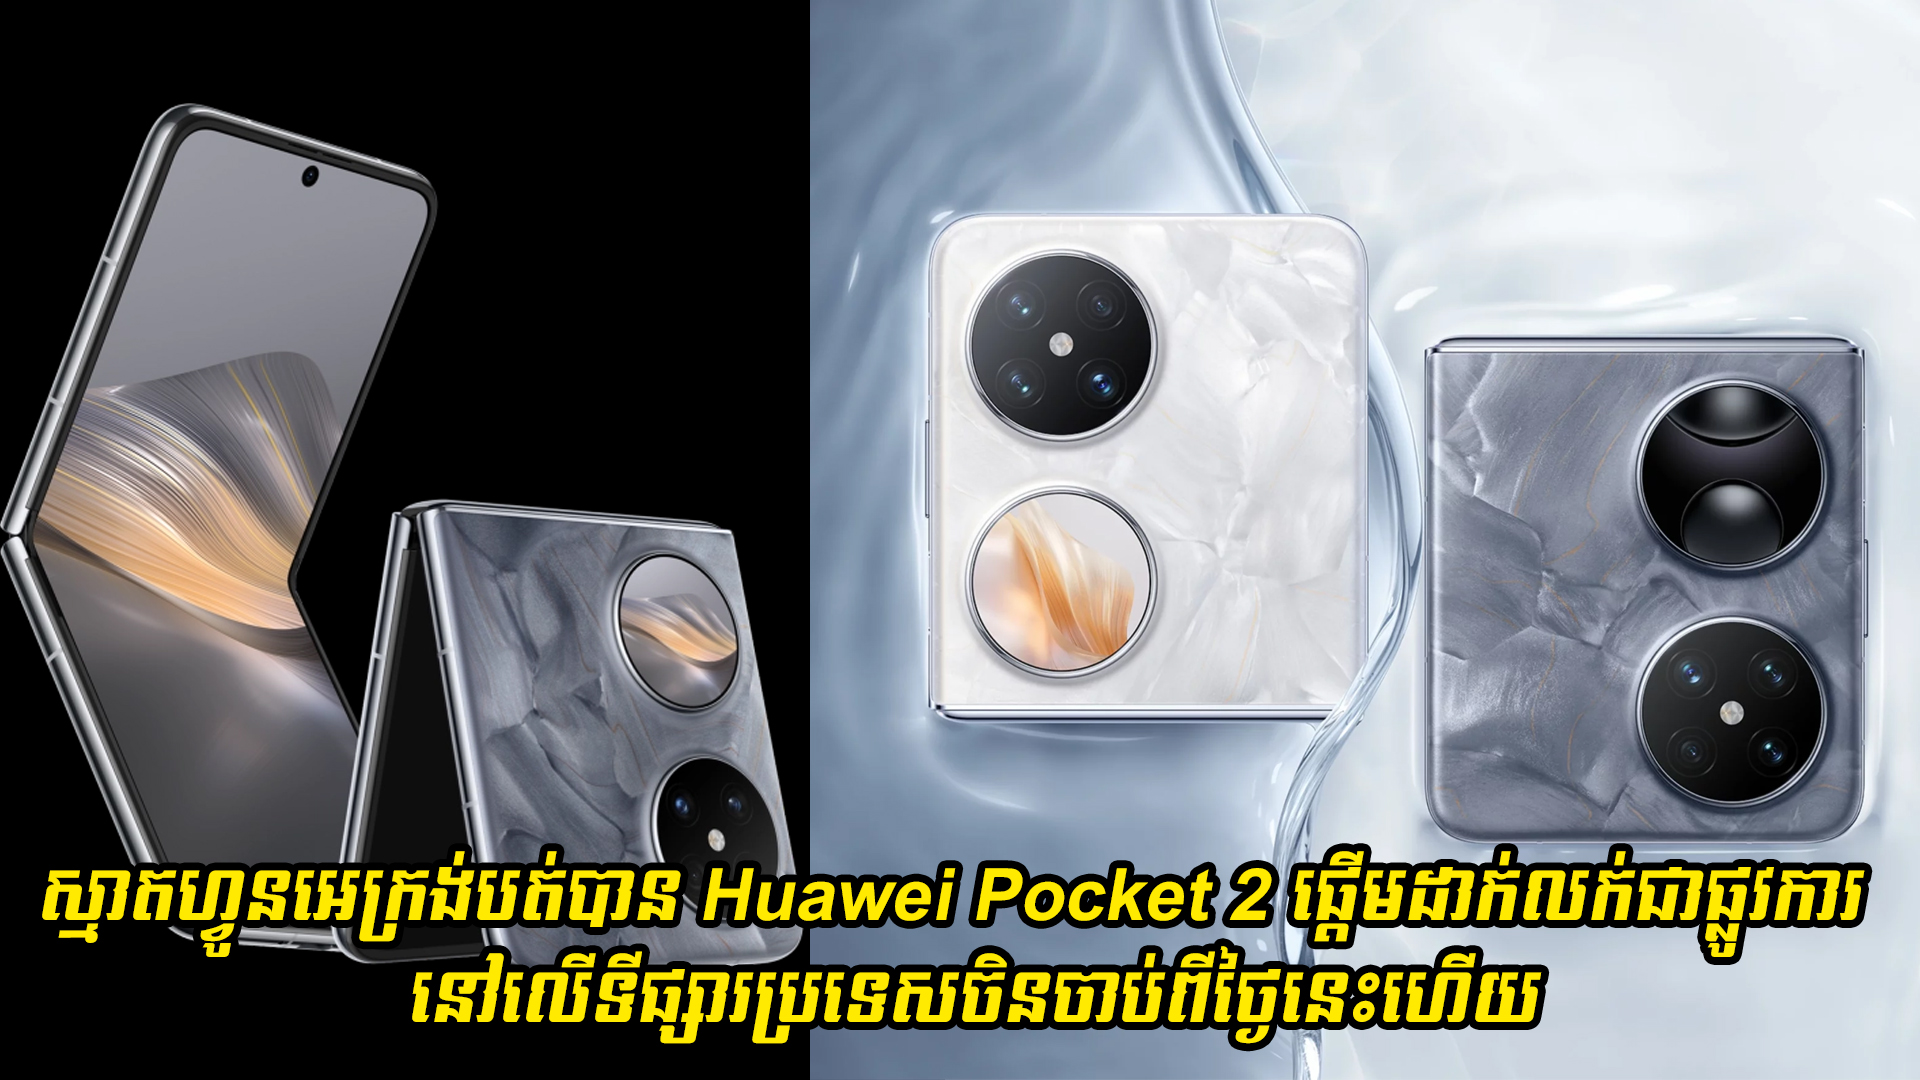 ស្មាតហ្វូនអេក្រង់បត់បាន Huawei Pocket 2 ផ្តើមដាក់លក់ជាផ្លូវការនៅលើទីផ្សារប្រទេសចិនហើយ